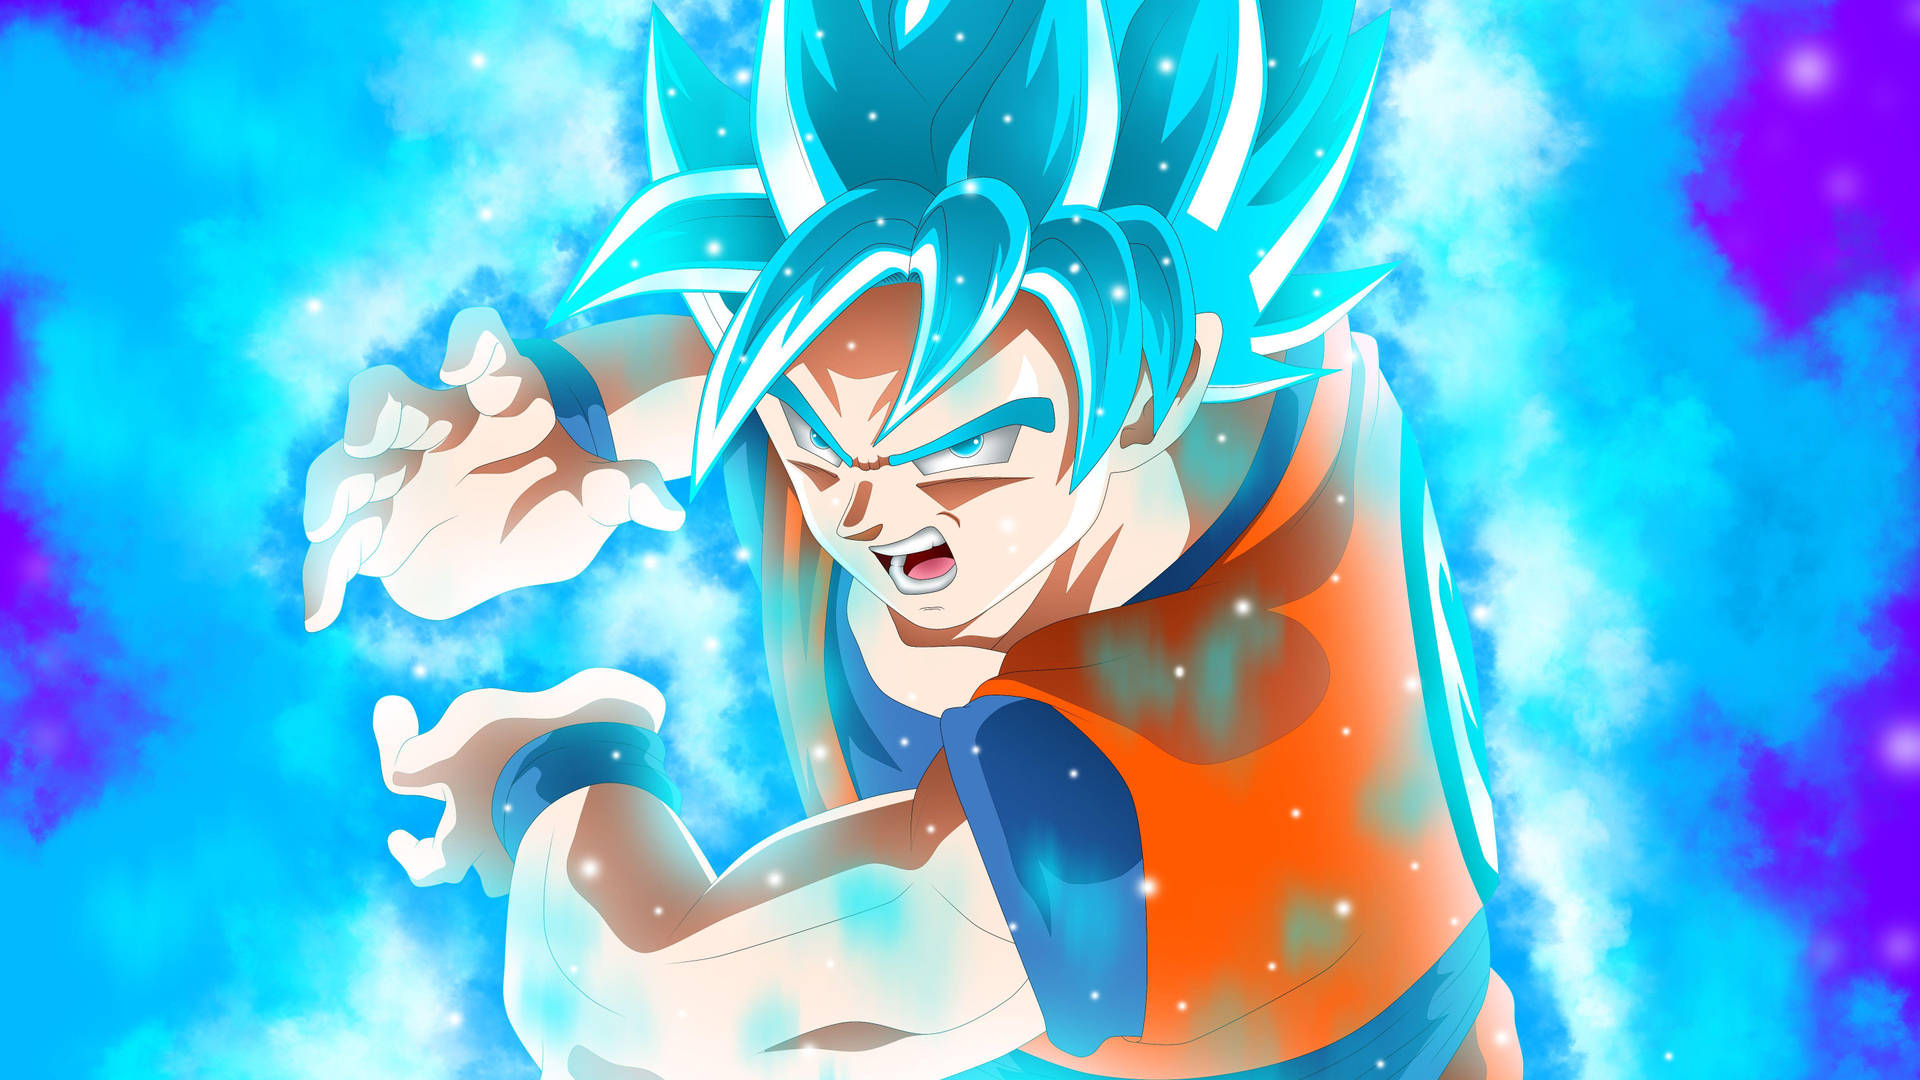 Goku,der Beschützer Der Erde Gegen Das Böse Wallpaper